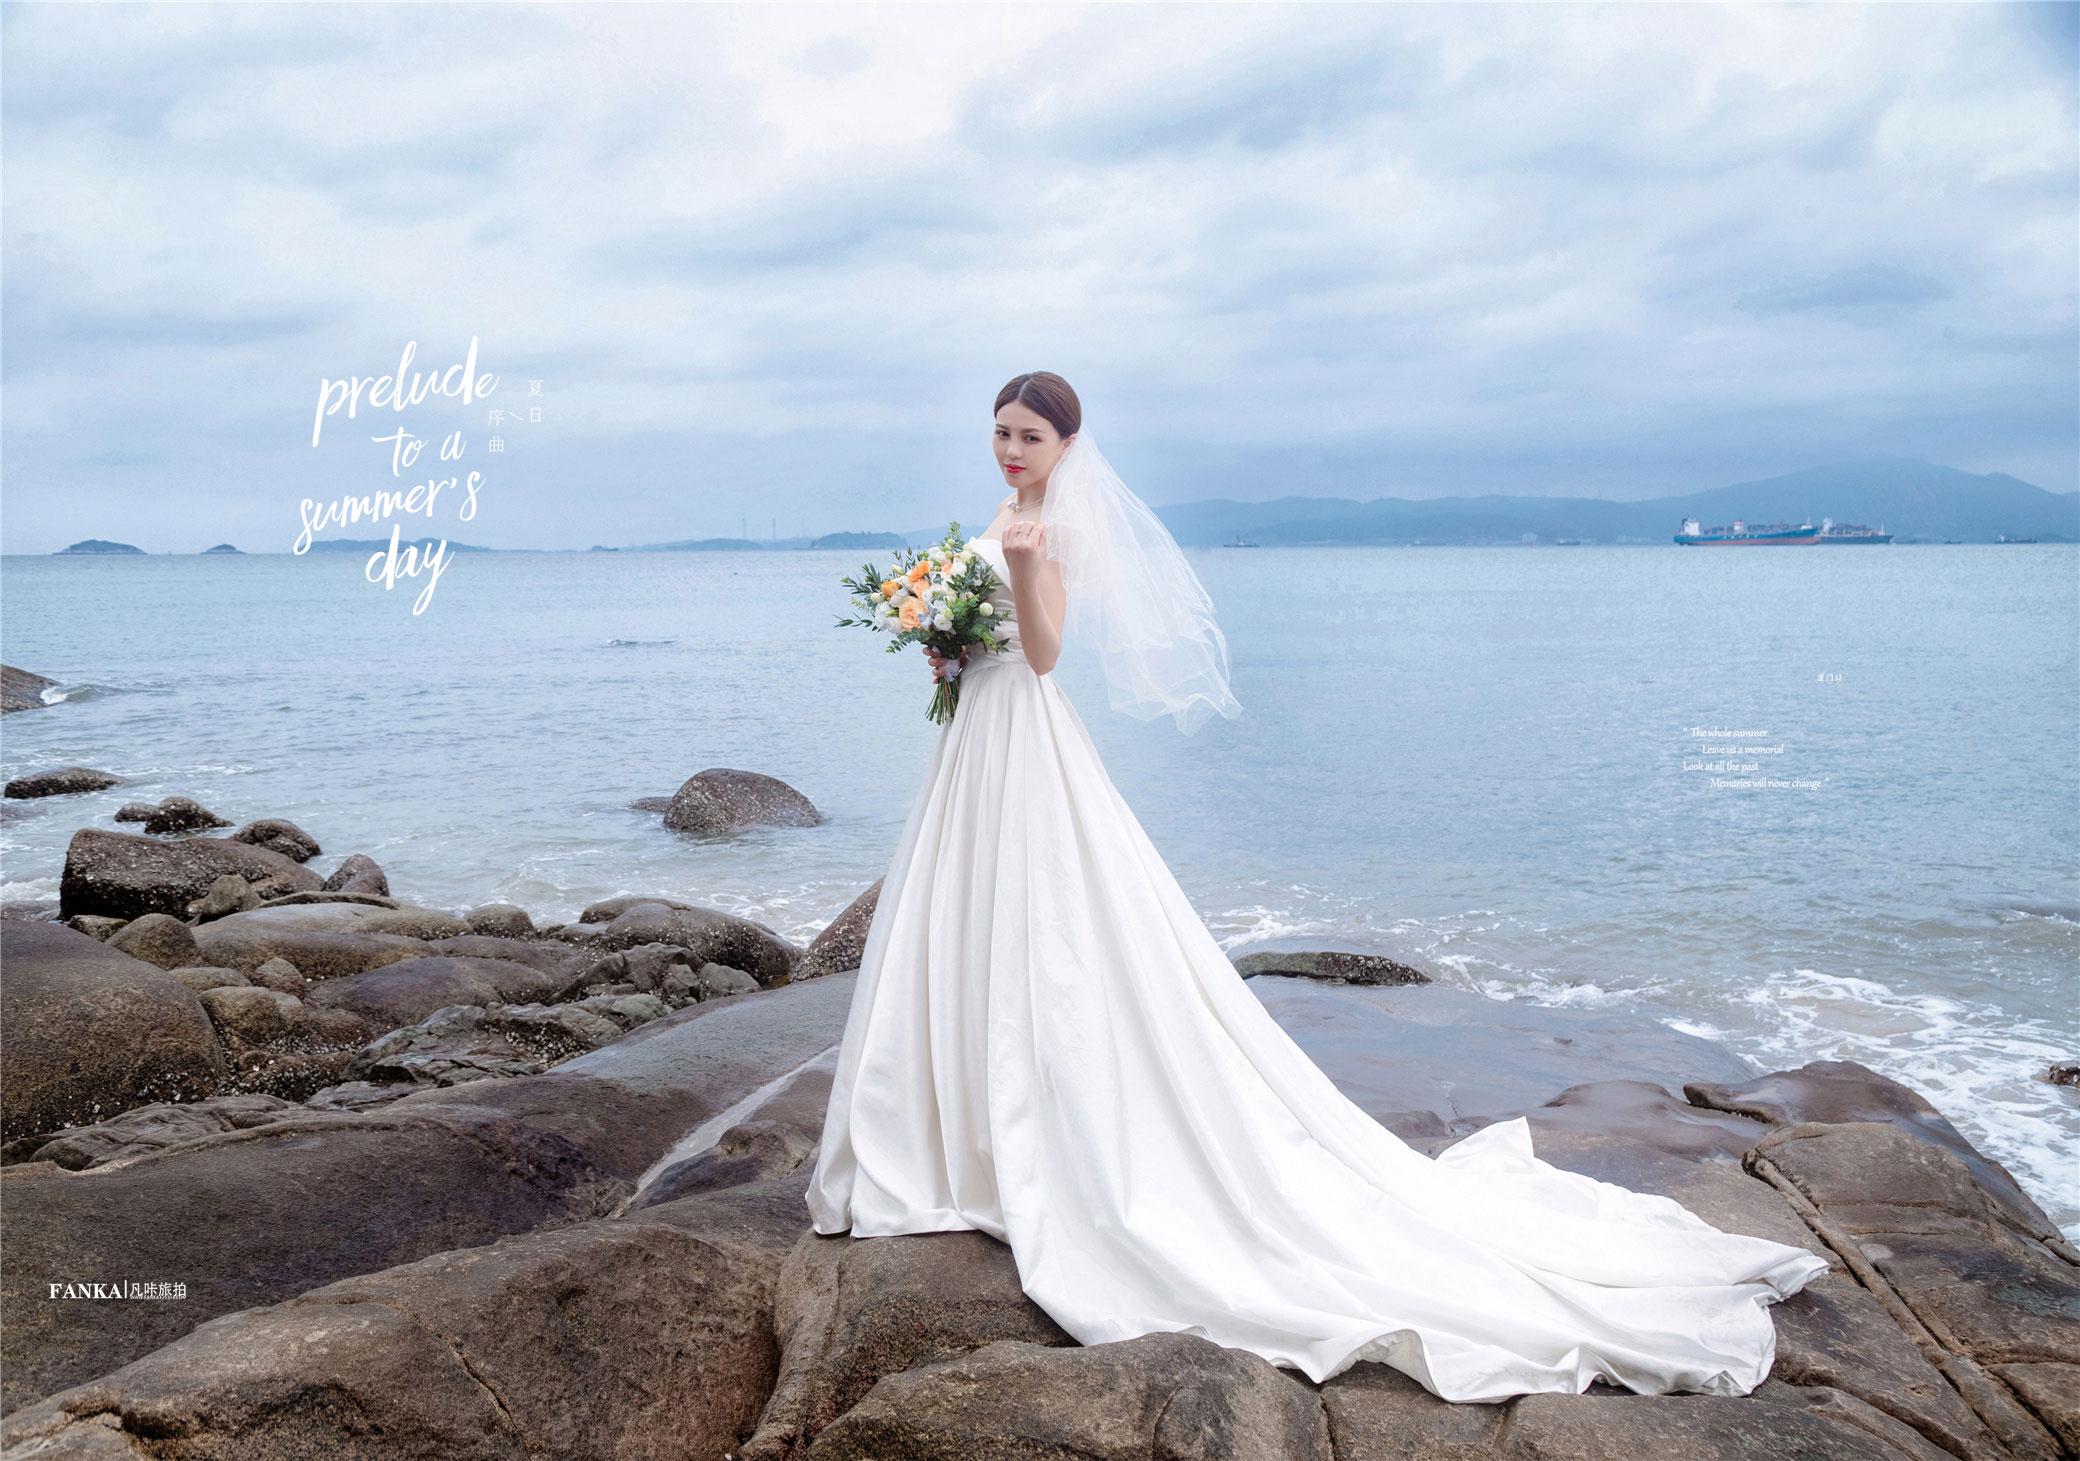 厦门旅拍婚纱照,这组大气优雅的海边礁石婚纱照,美爆了